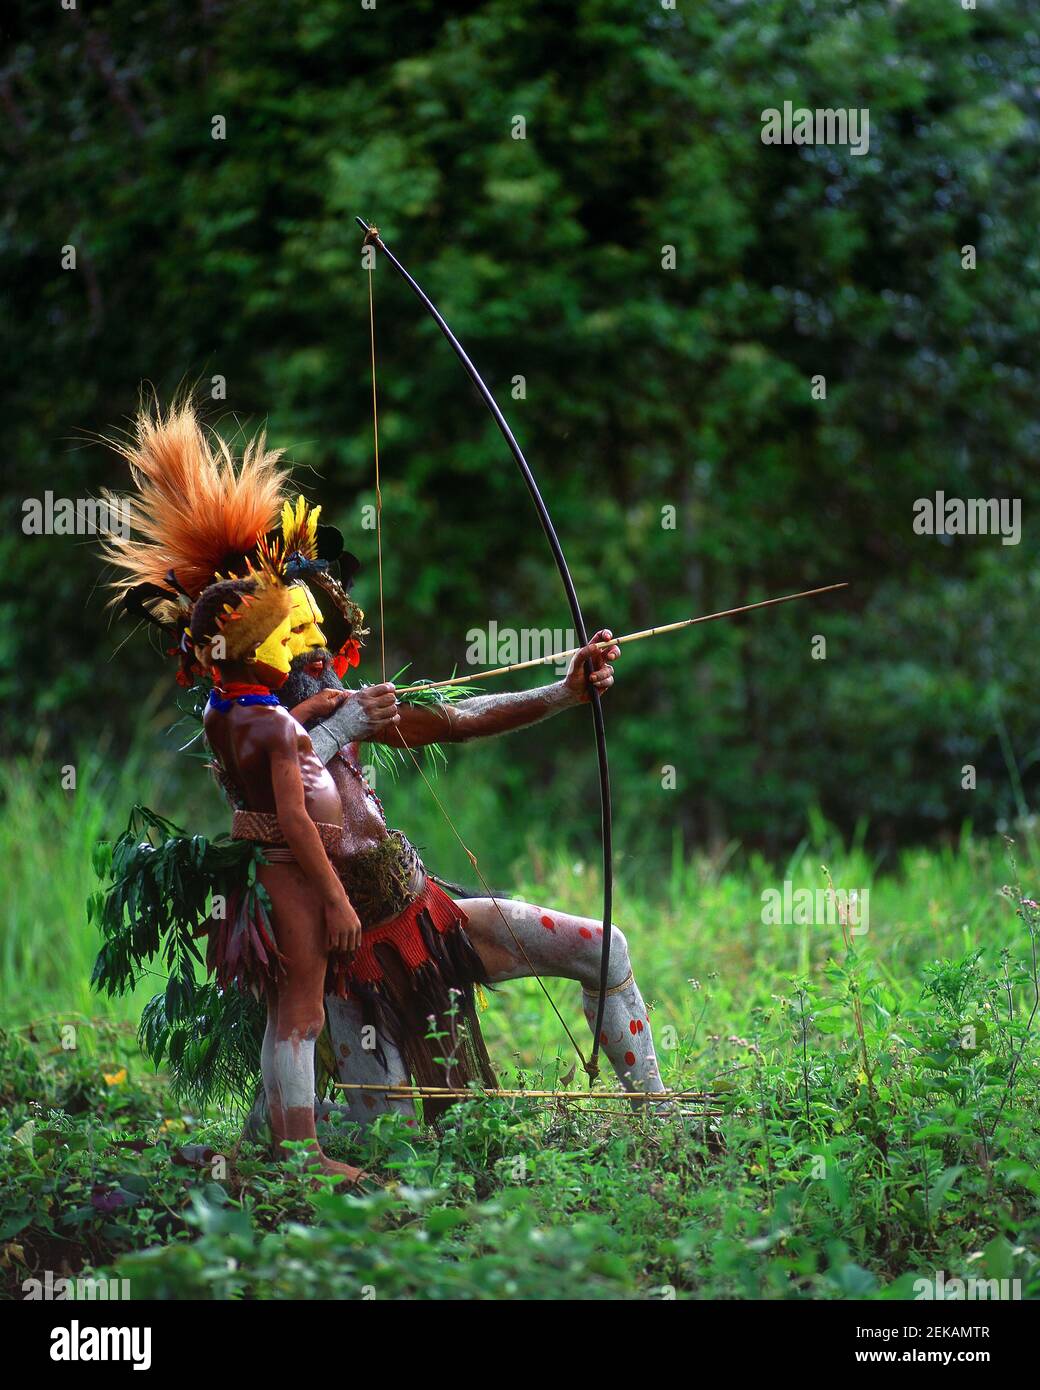 WIE EIN VATER WIE EIN SOHN - ein Bogenschütze lehrt seinen Sohn, wie er schießt. DIE HIGHLANDS, PAPUA-NEUGUINEA: STAMMESANGEHÖRIGEN, die sich in pulsierenden, bunten Körperschmerzen verkleidet haben Stockfoto